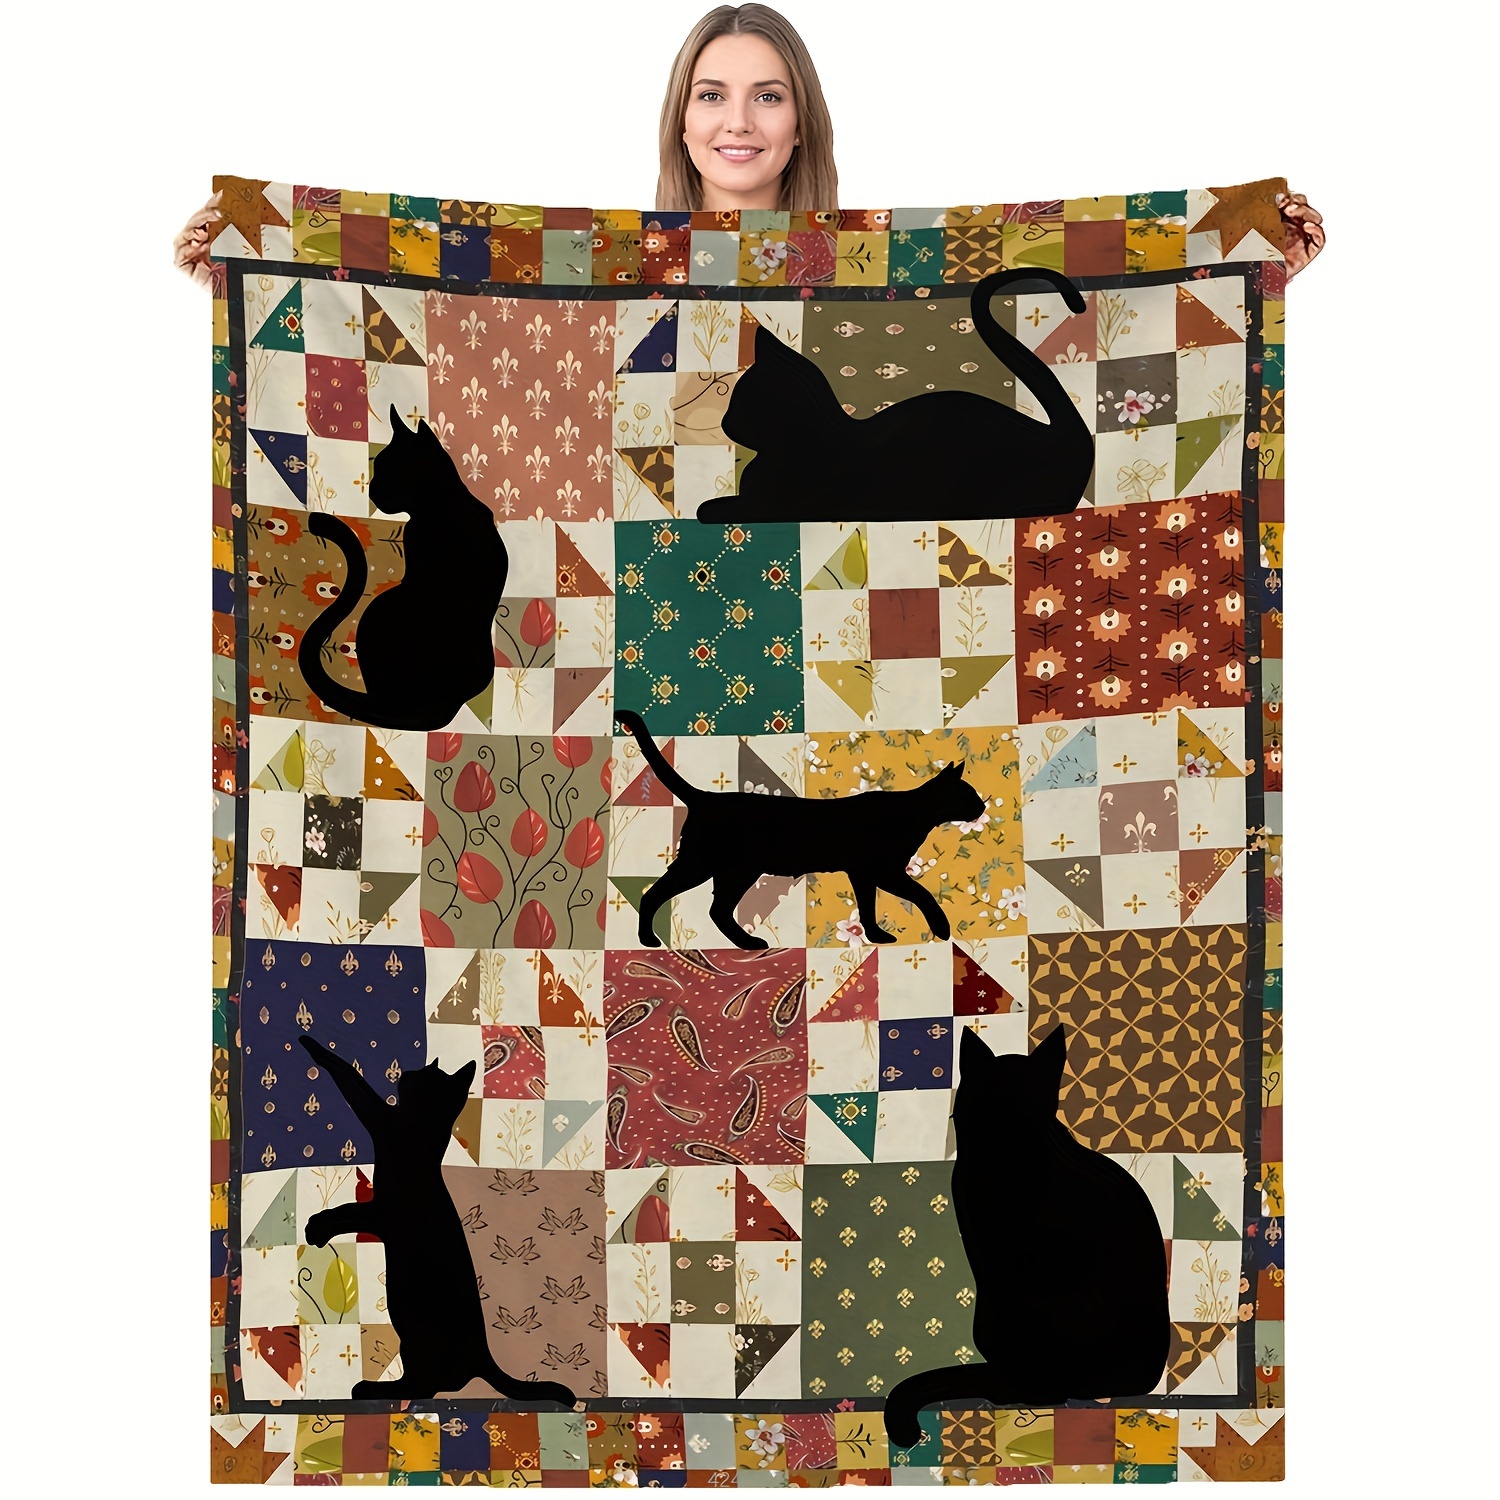 

Vintage Floral Stitching Blanket Cat Blanket Gift For A Friend Blanket Soft Flannel Sofa Blanket Tv Blanket 1